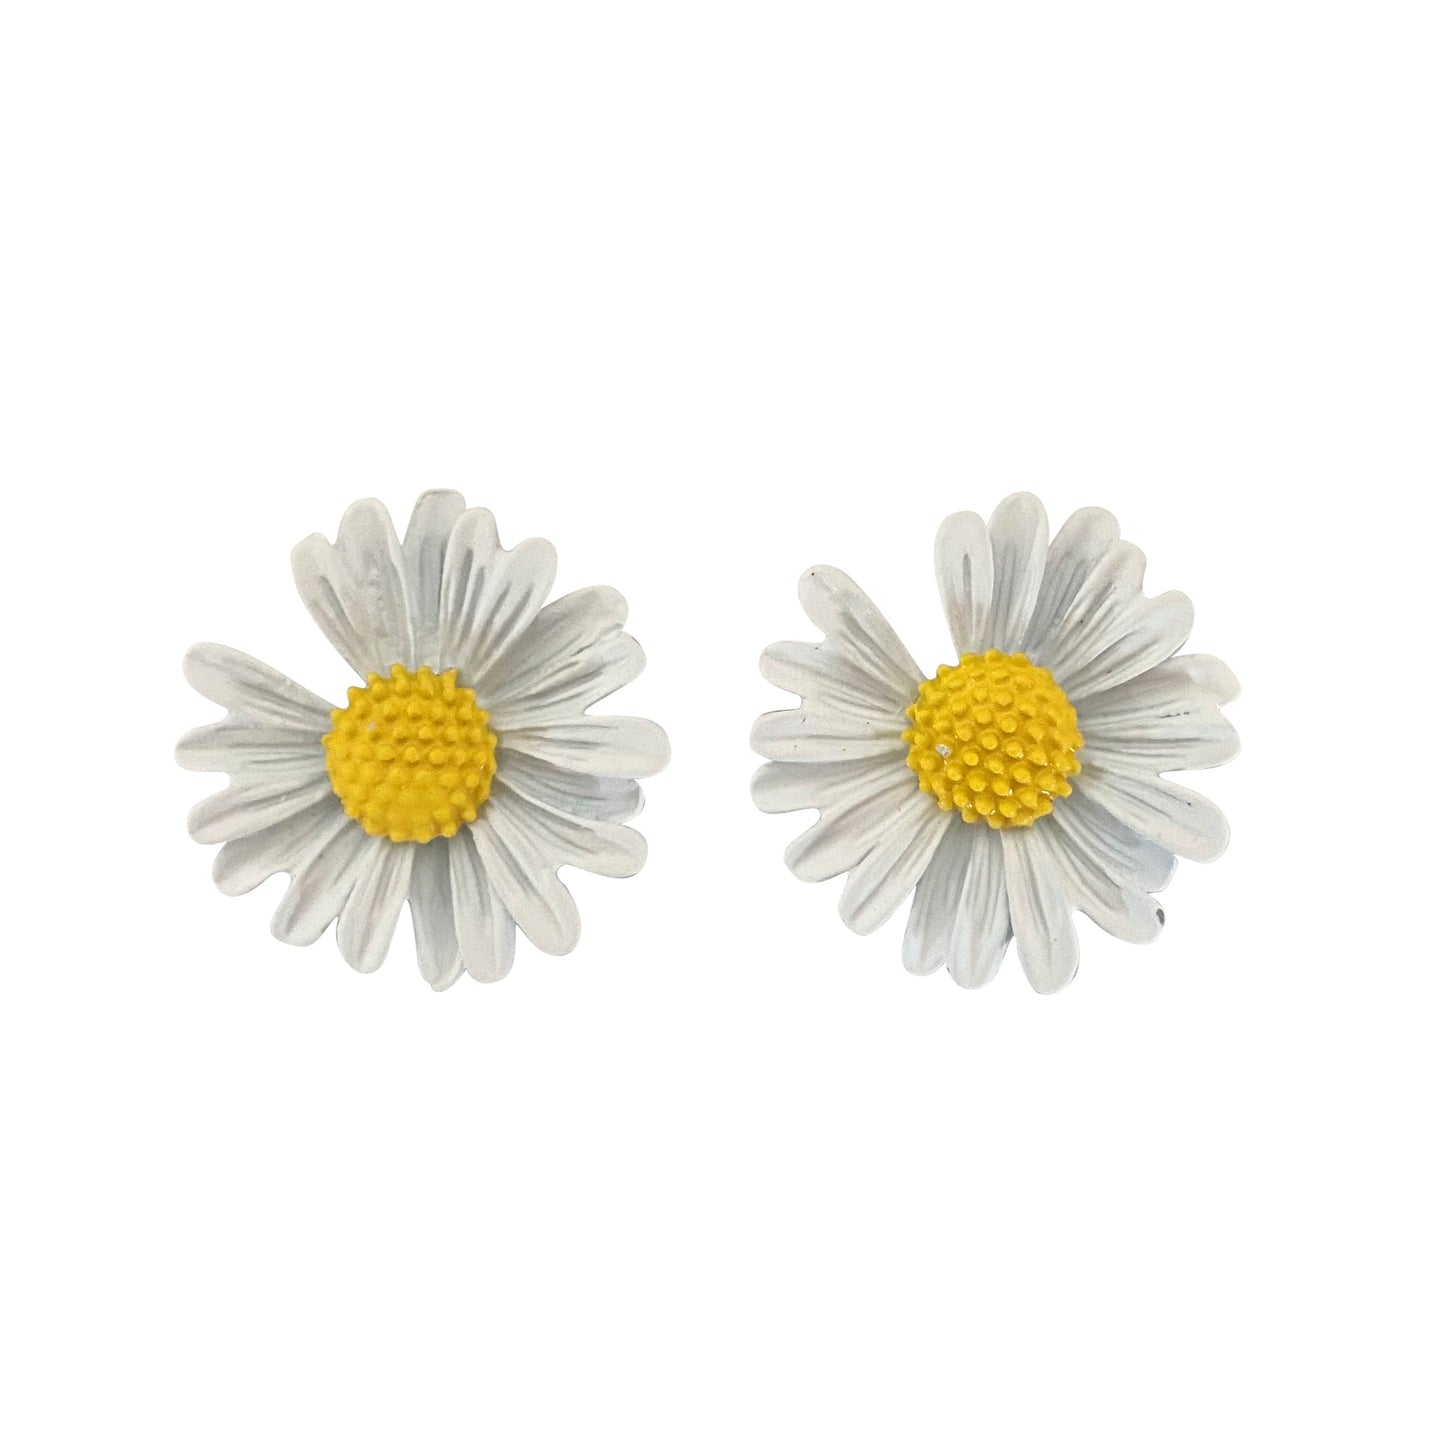 Greenwood Flower earrings